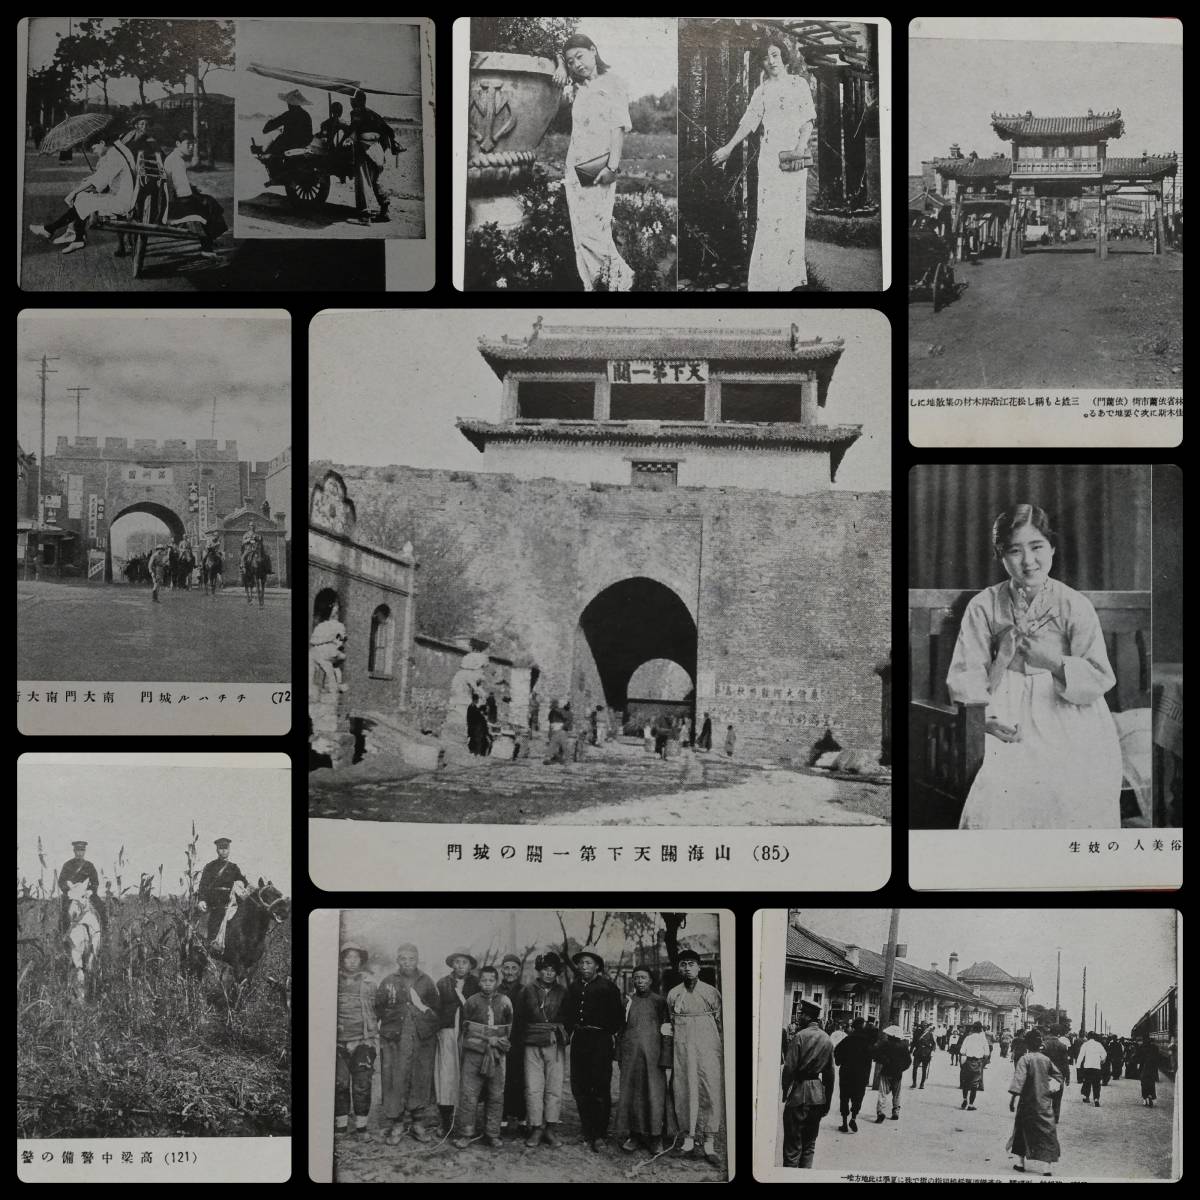 満洲名所写真帖 100図 検索: 中華民国 軍閥 蒋介石 古建築 生写真 